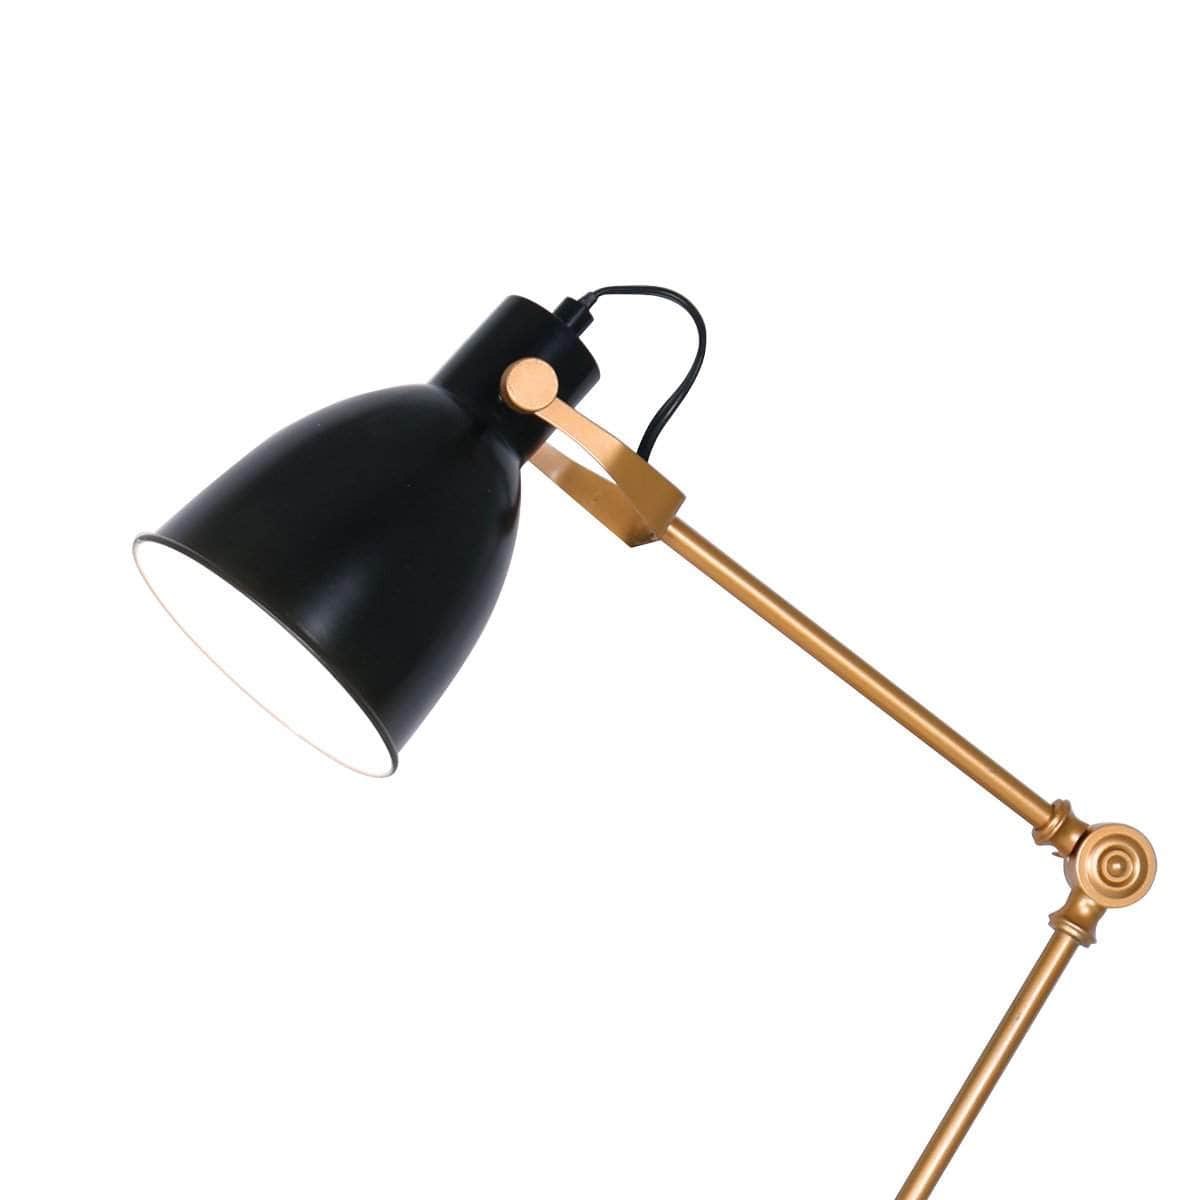 Elegance Illuminated Adjustable Black and Gold Metal Table Lamp